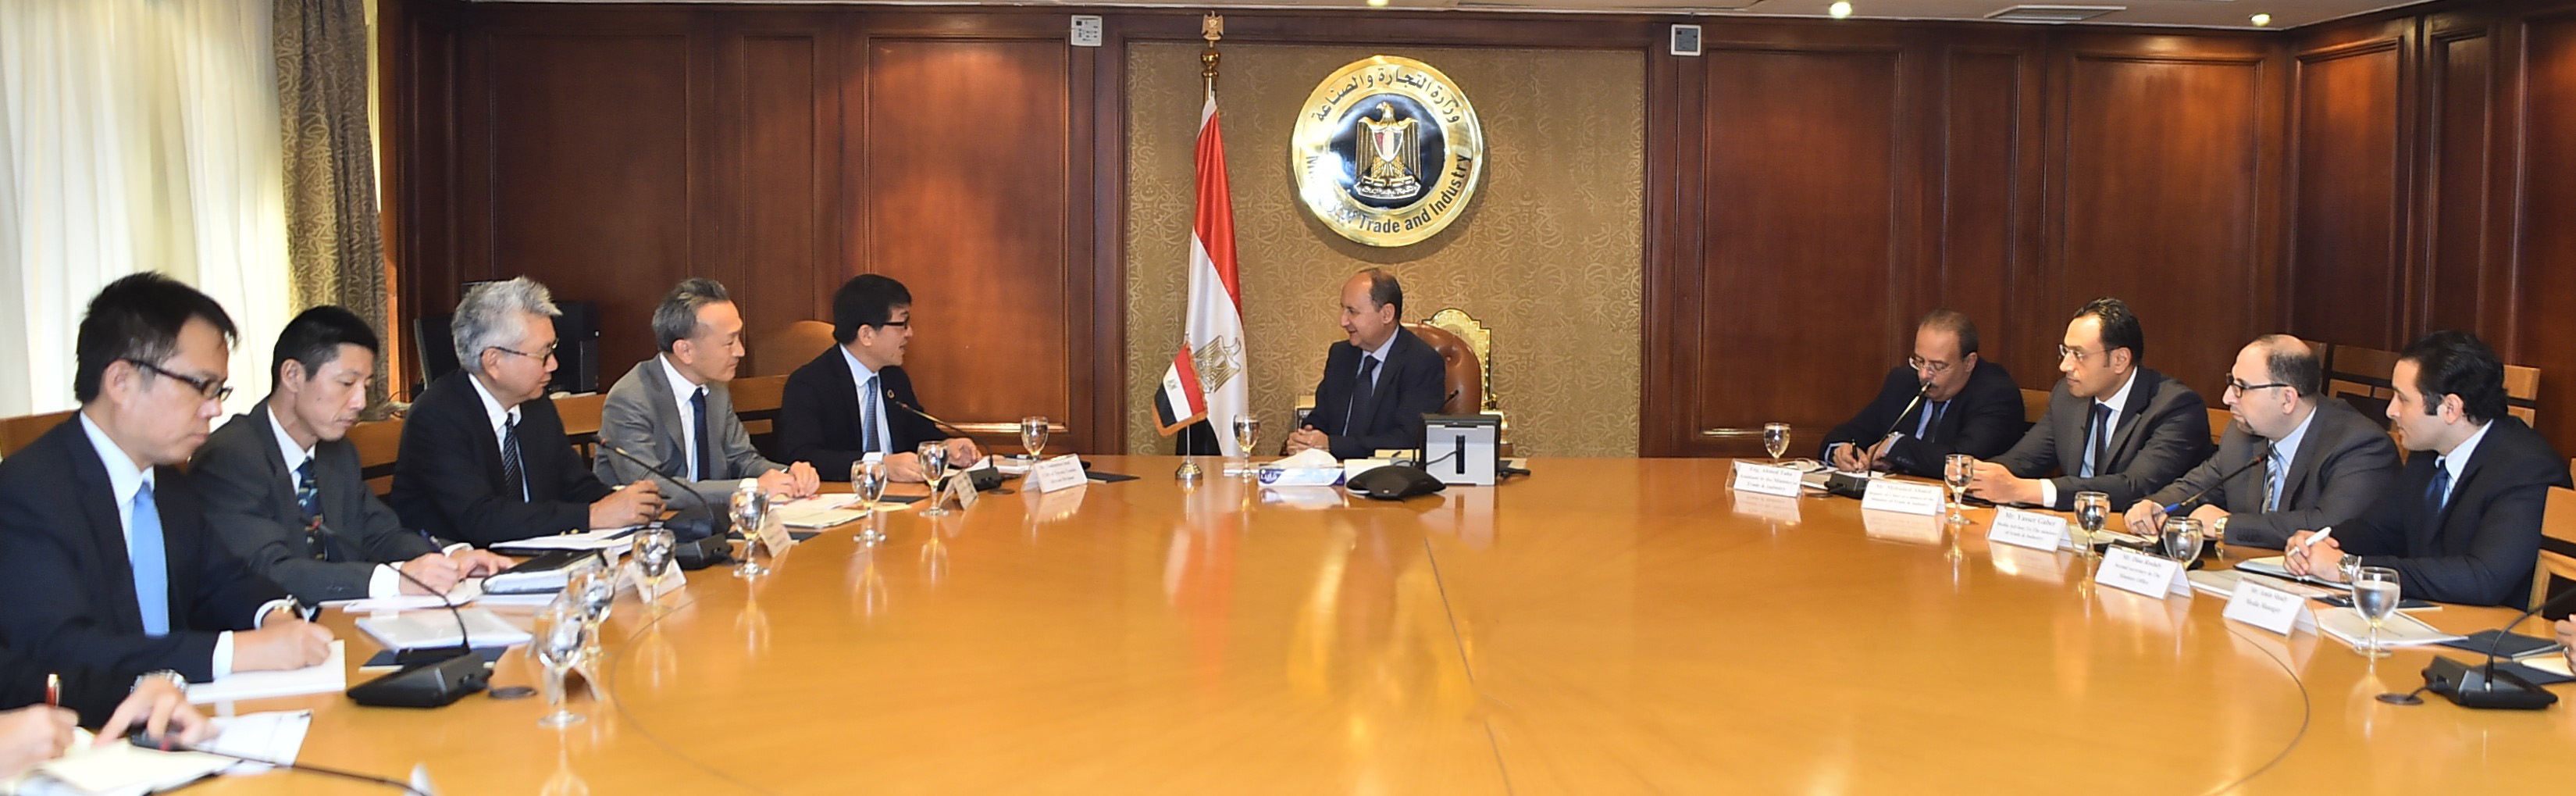   وزير التجارة والصناعة يبحث مع وفد شركة تويوتا خطة الشركة للتوسع بالسوق المصري خلال المرحلة المقبلة